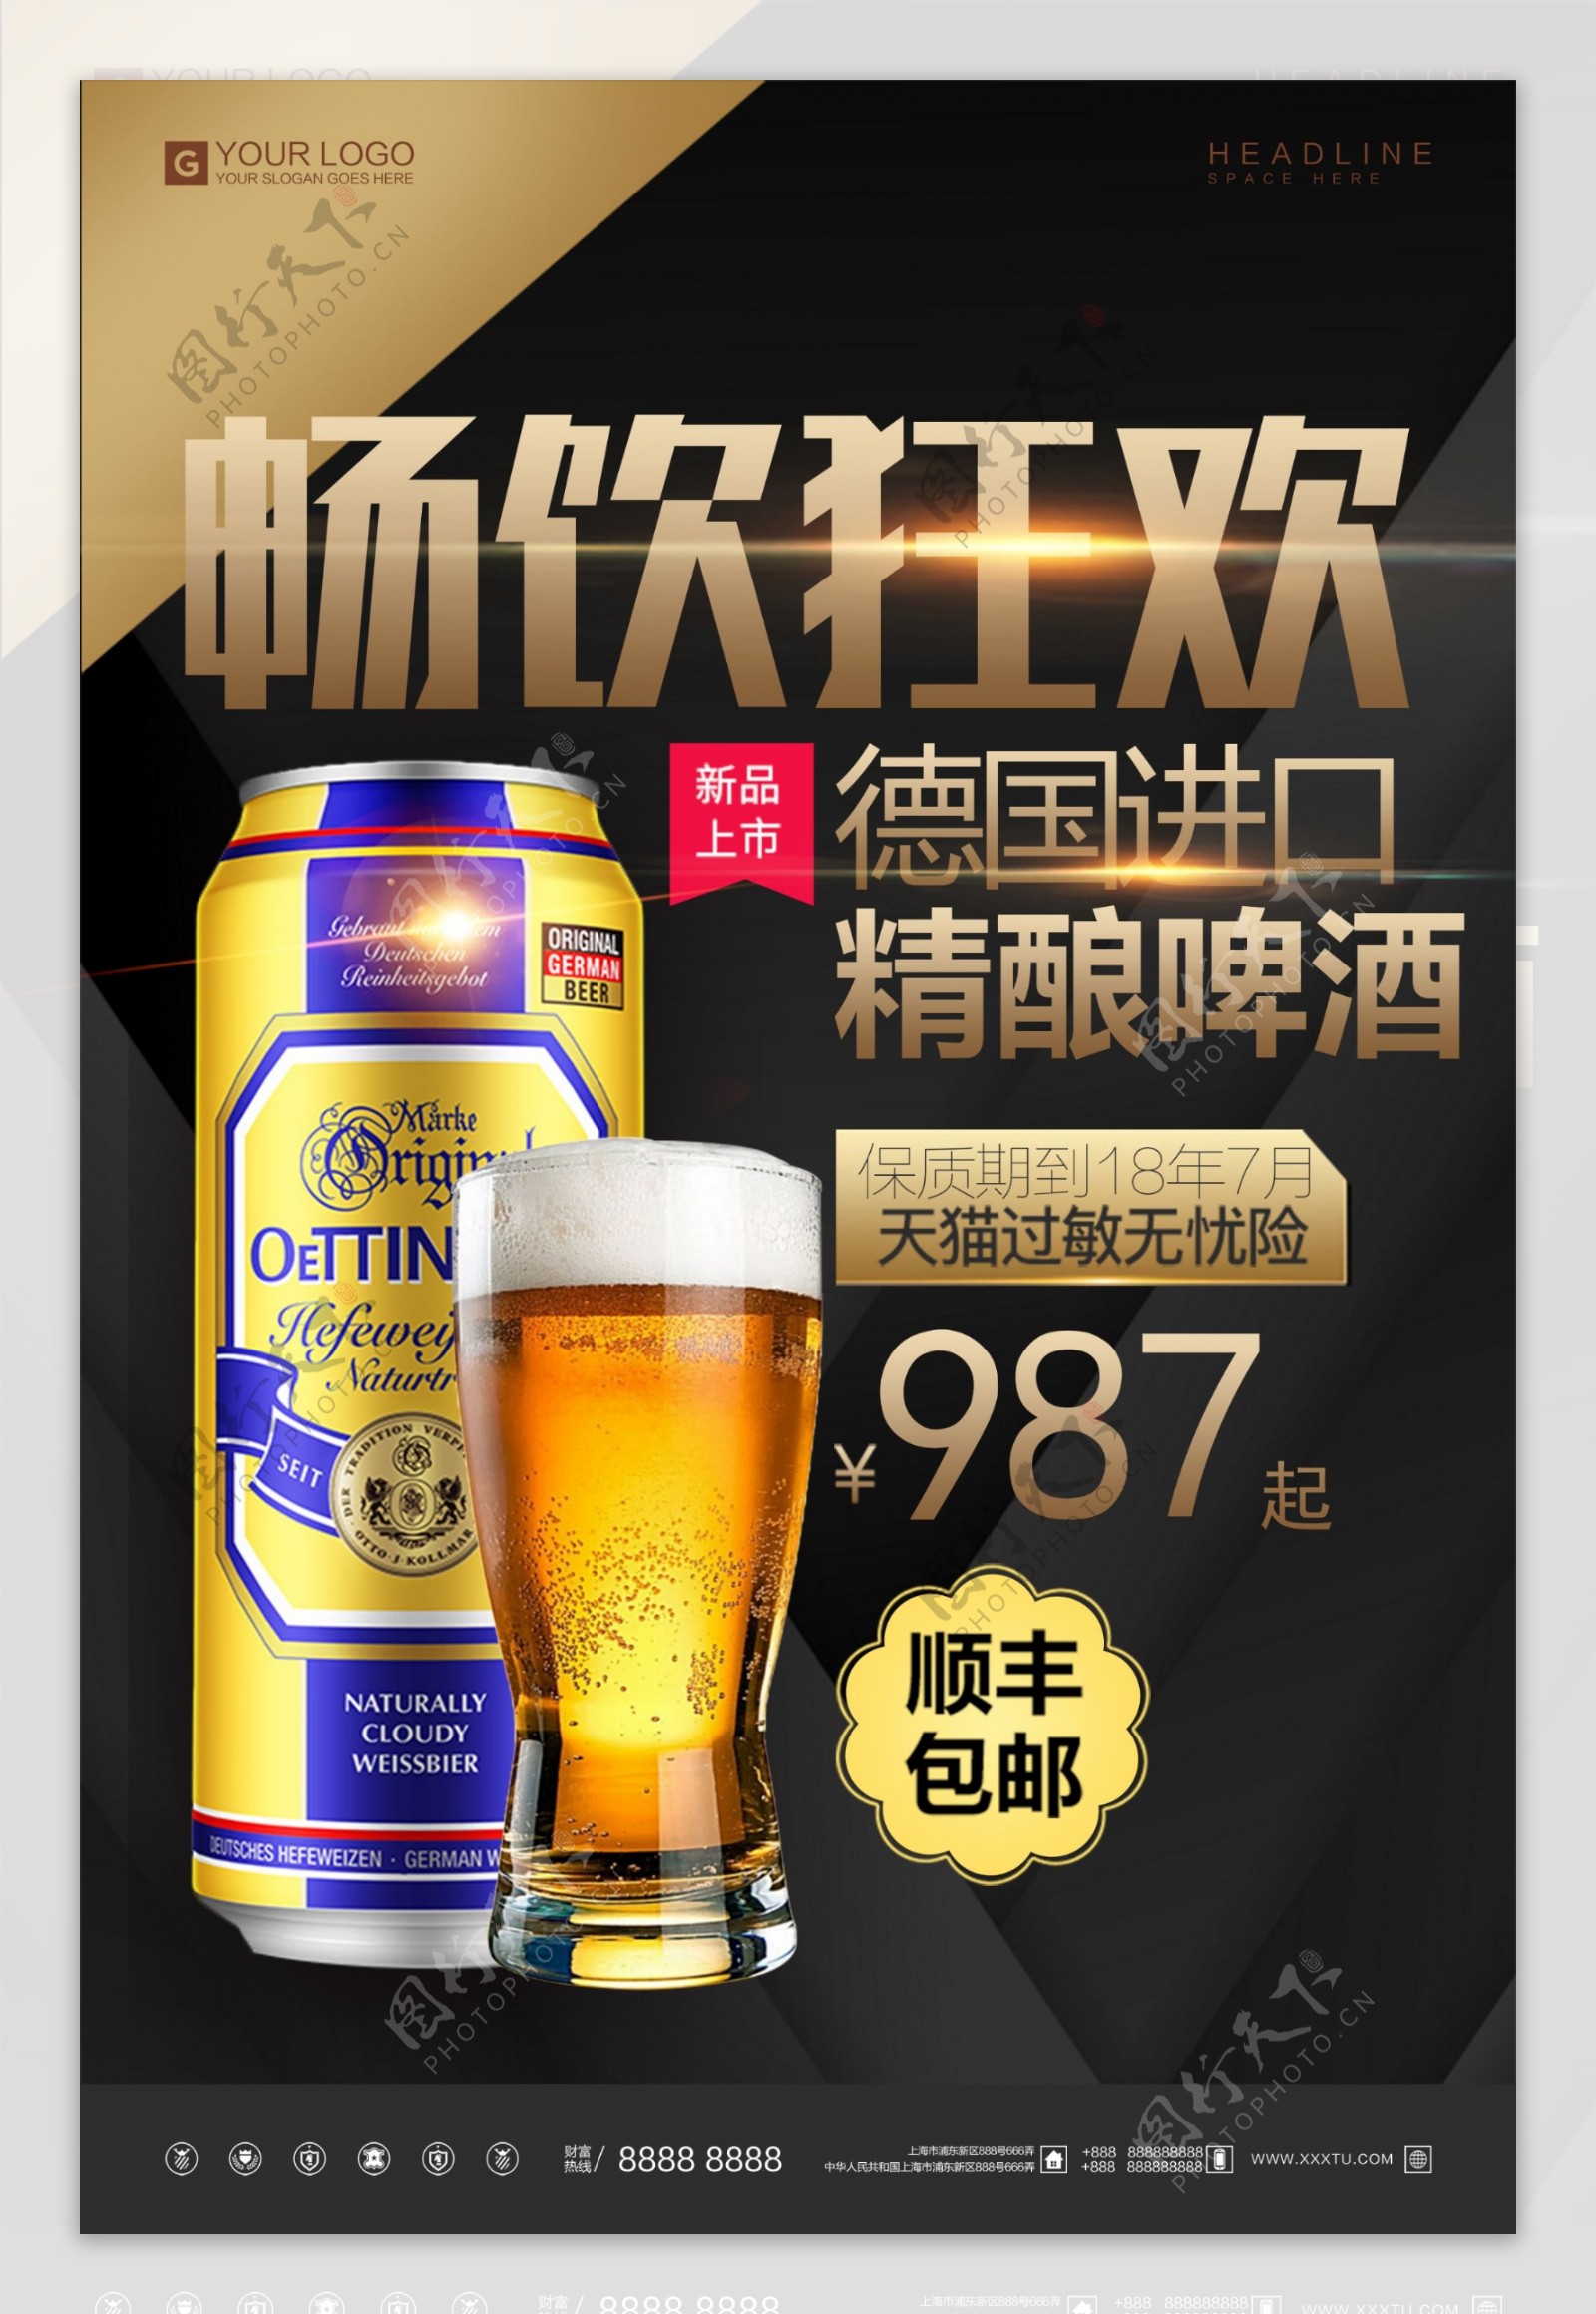 酷炫黑金啤酒狂欢啤酒节宣传海报设计模板